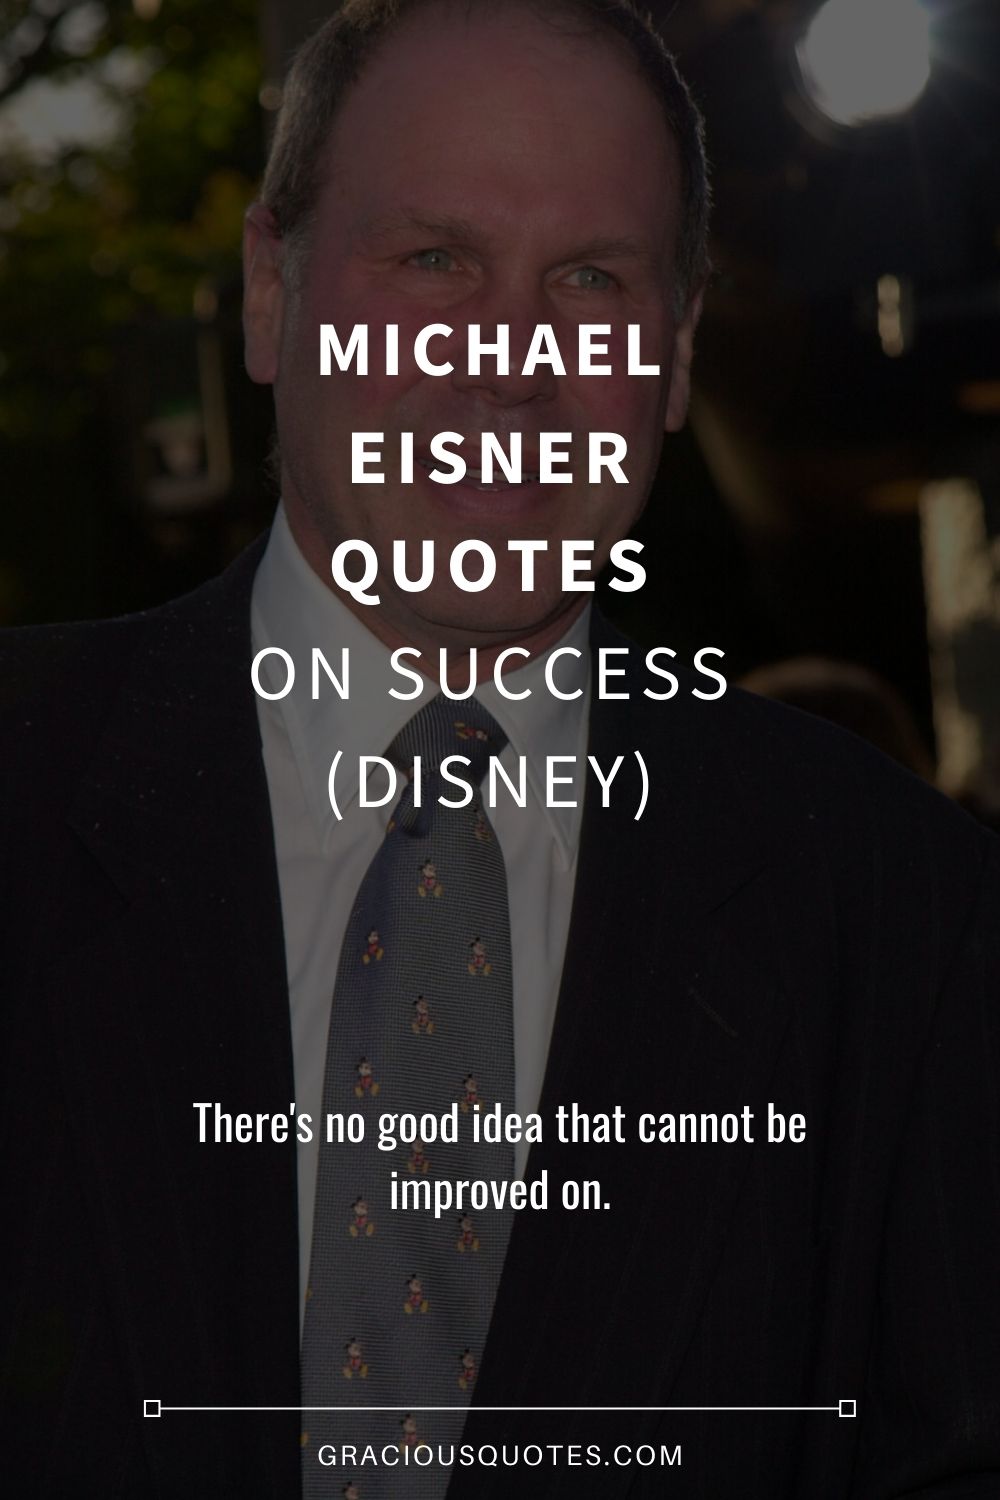 Michael Eisner Quotes on Success (DISNEY) - Gracious Quotes